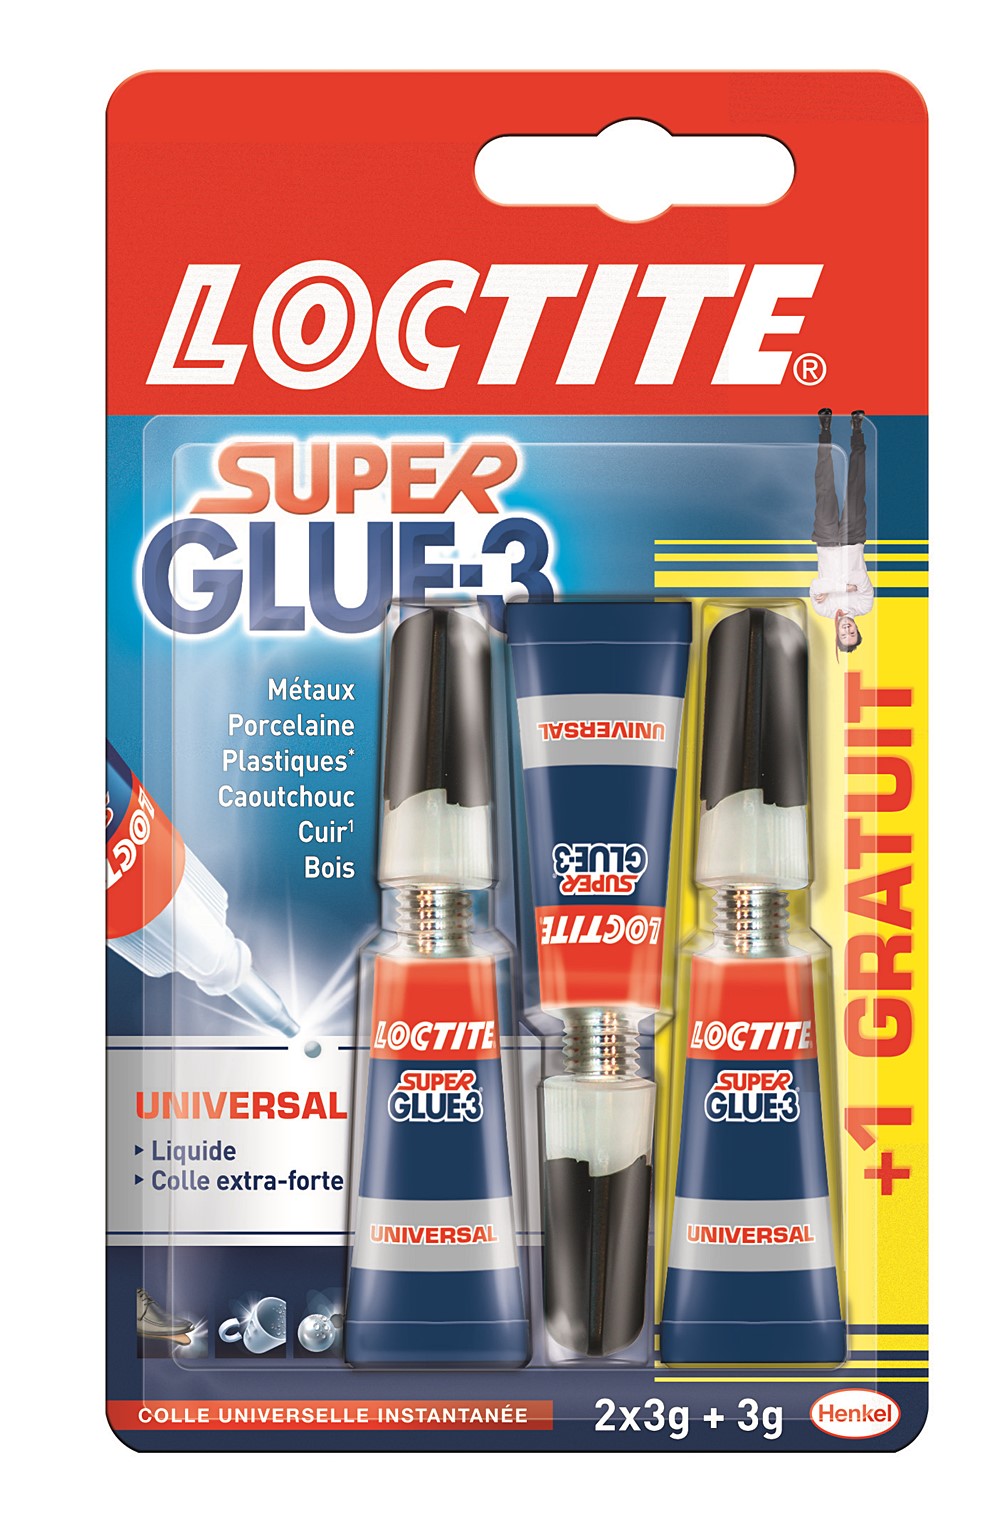 Colle SUPER GLUE-3 Liquide Universal - 3g - Lot de 2+1 Gratuit - LOCTITE